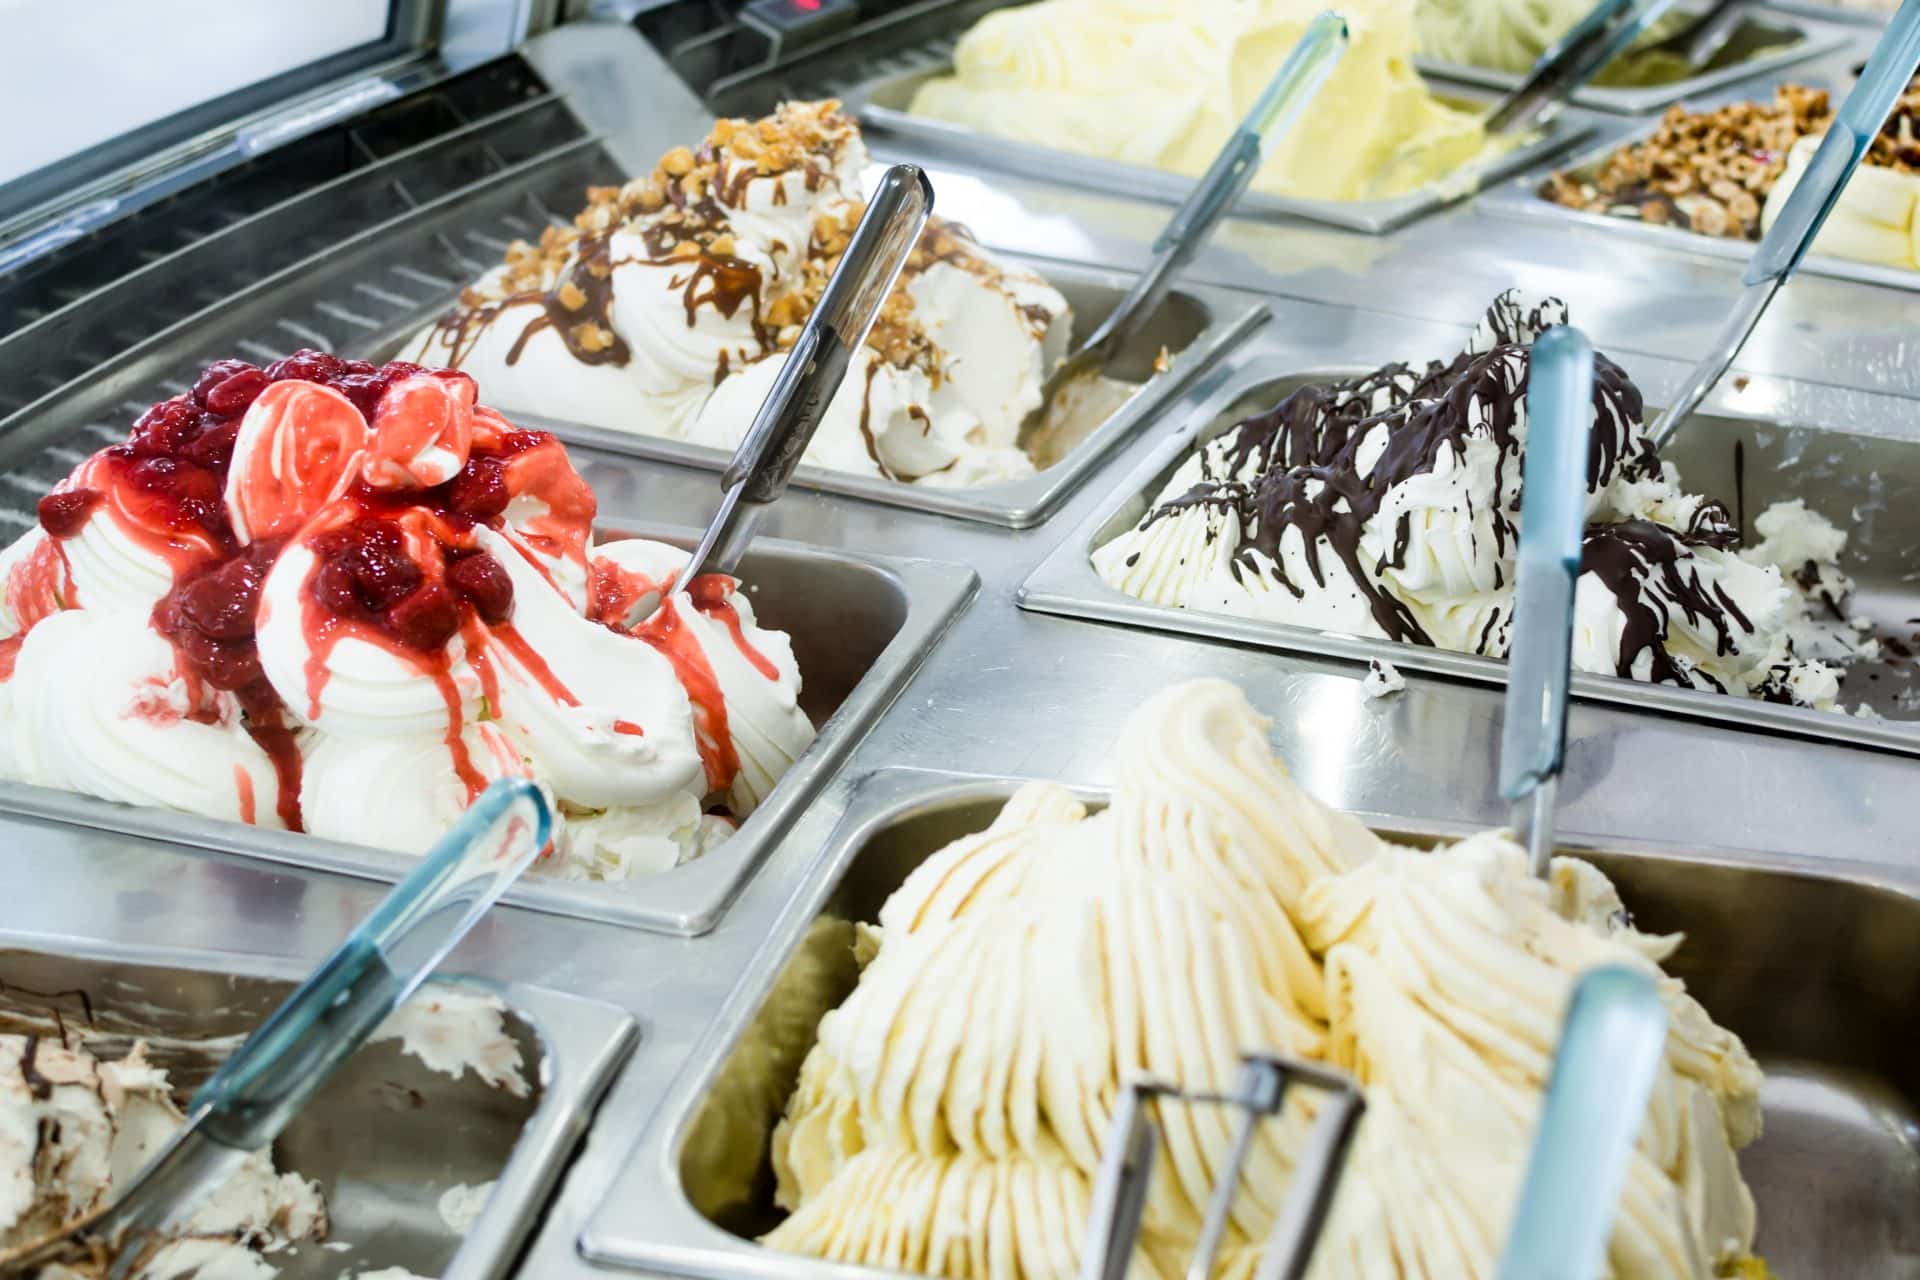 Ice cream in Carpigiani